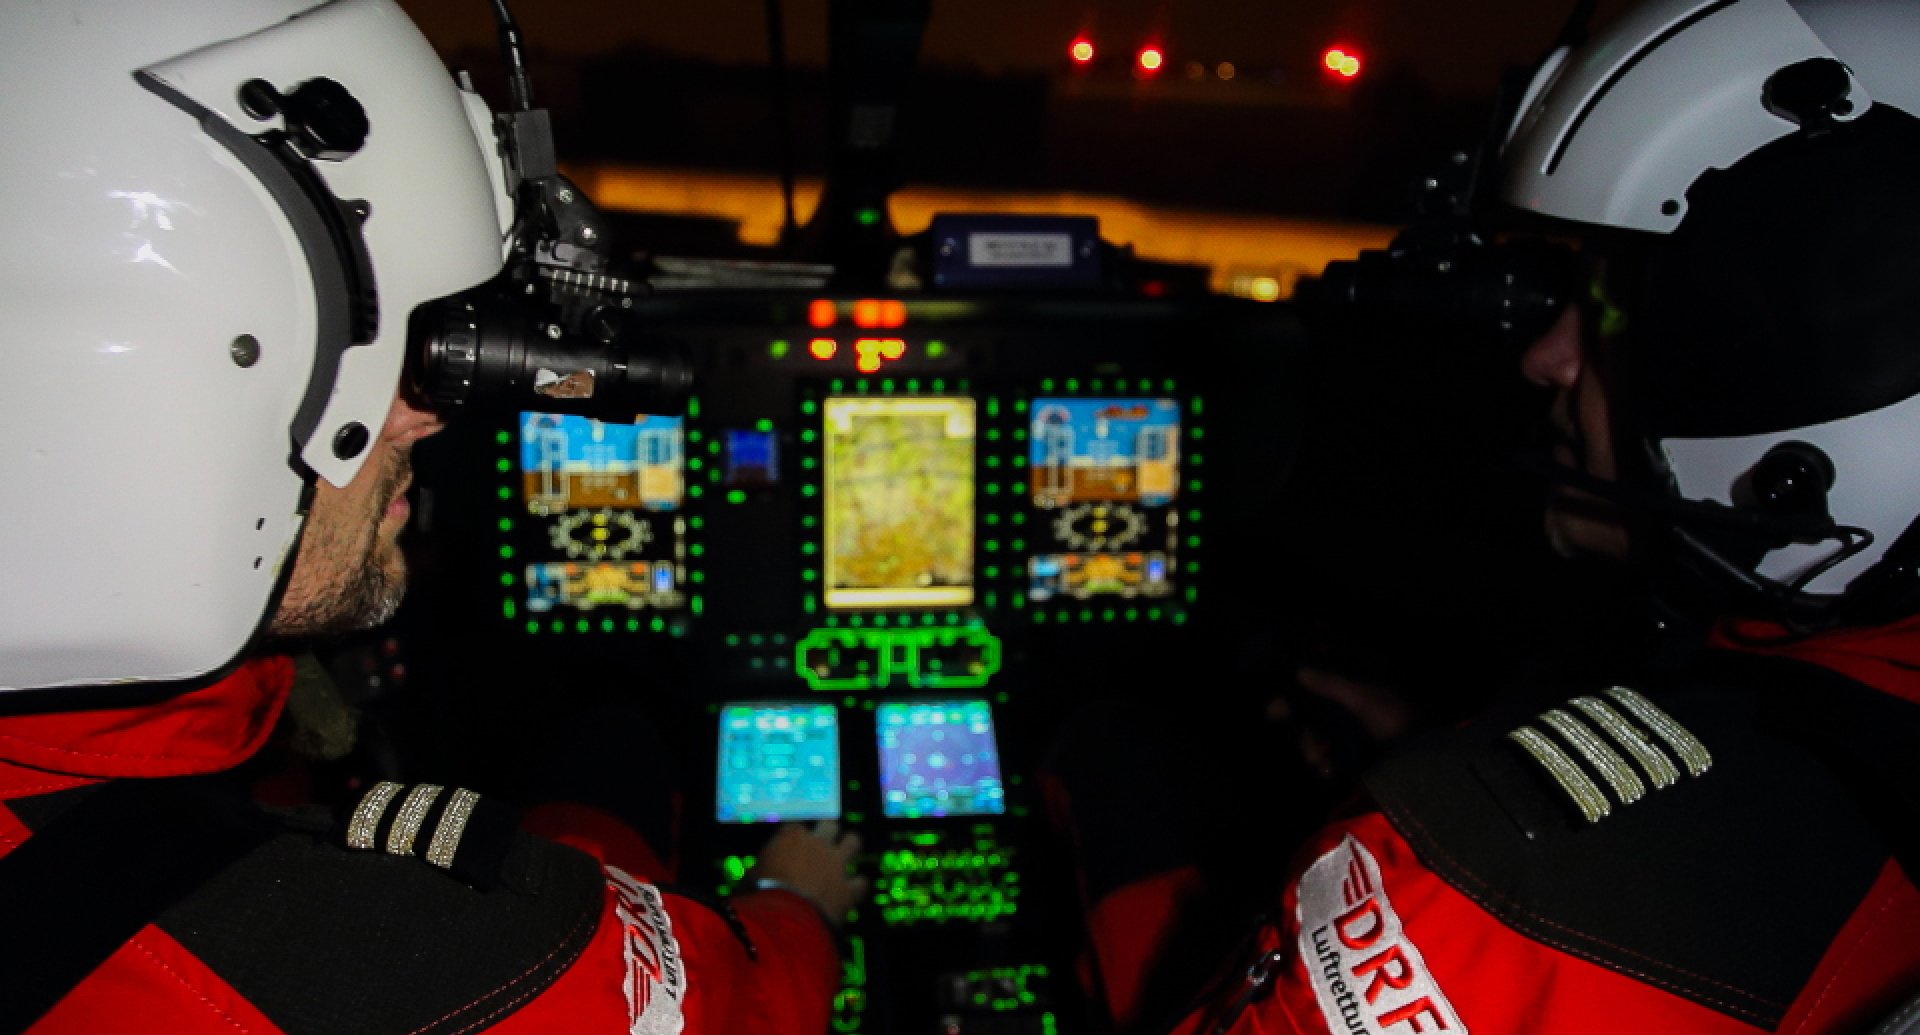 drf-luftrettung-muenchen-nachtflug-cockpit-symbolbild-960x600